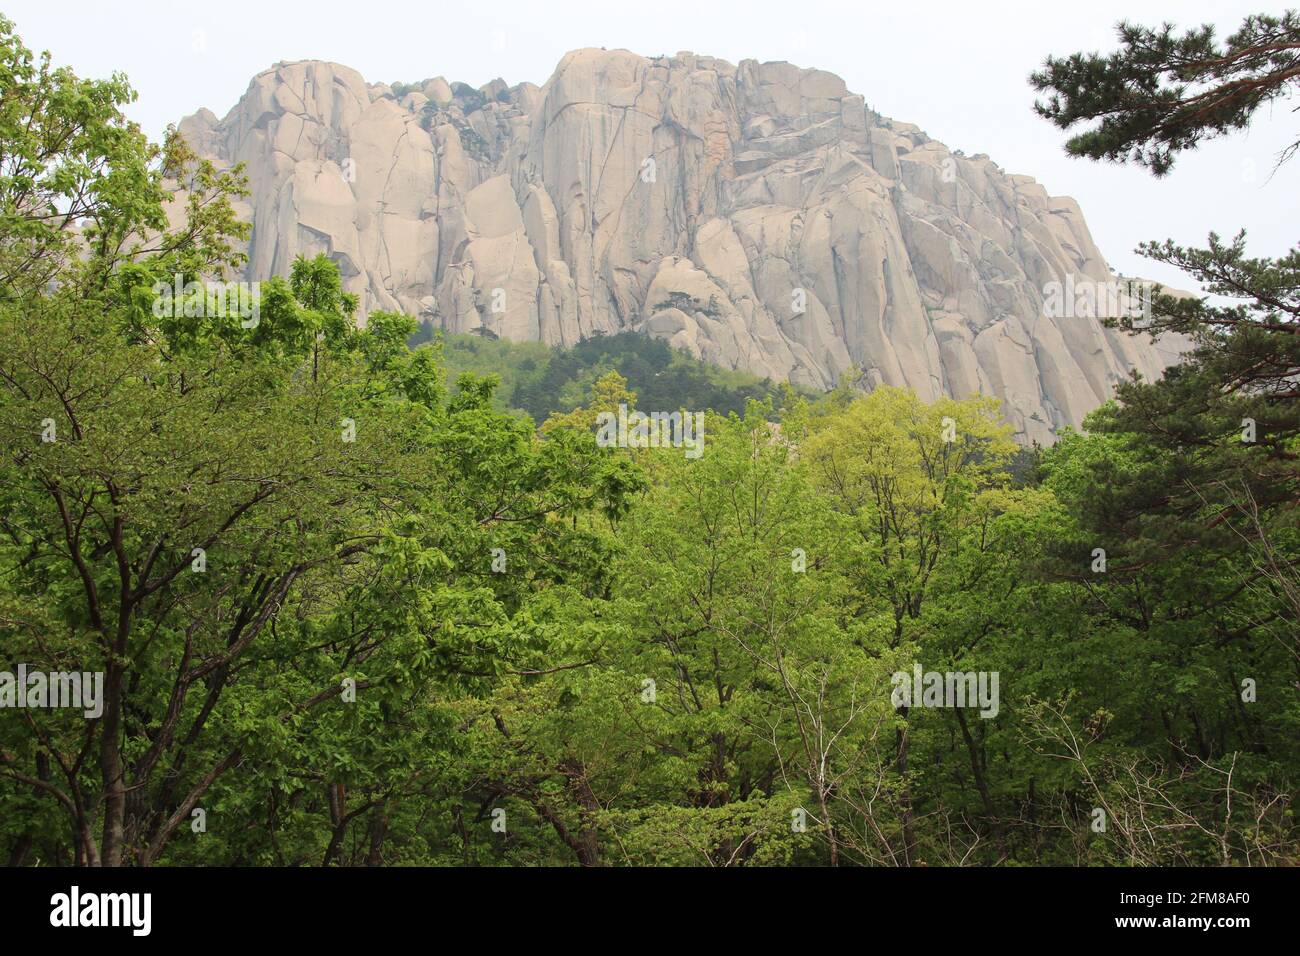 Ulsanbawi la roca con seis picos en la cima de Montaña Seorak en el Parque Nacional de Seoraksan en Corea del Sur Foto de stock